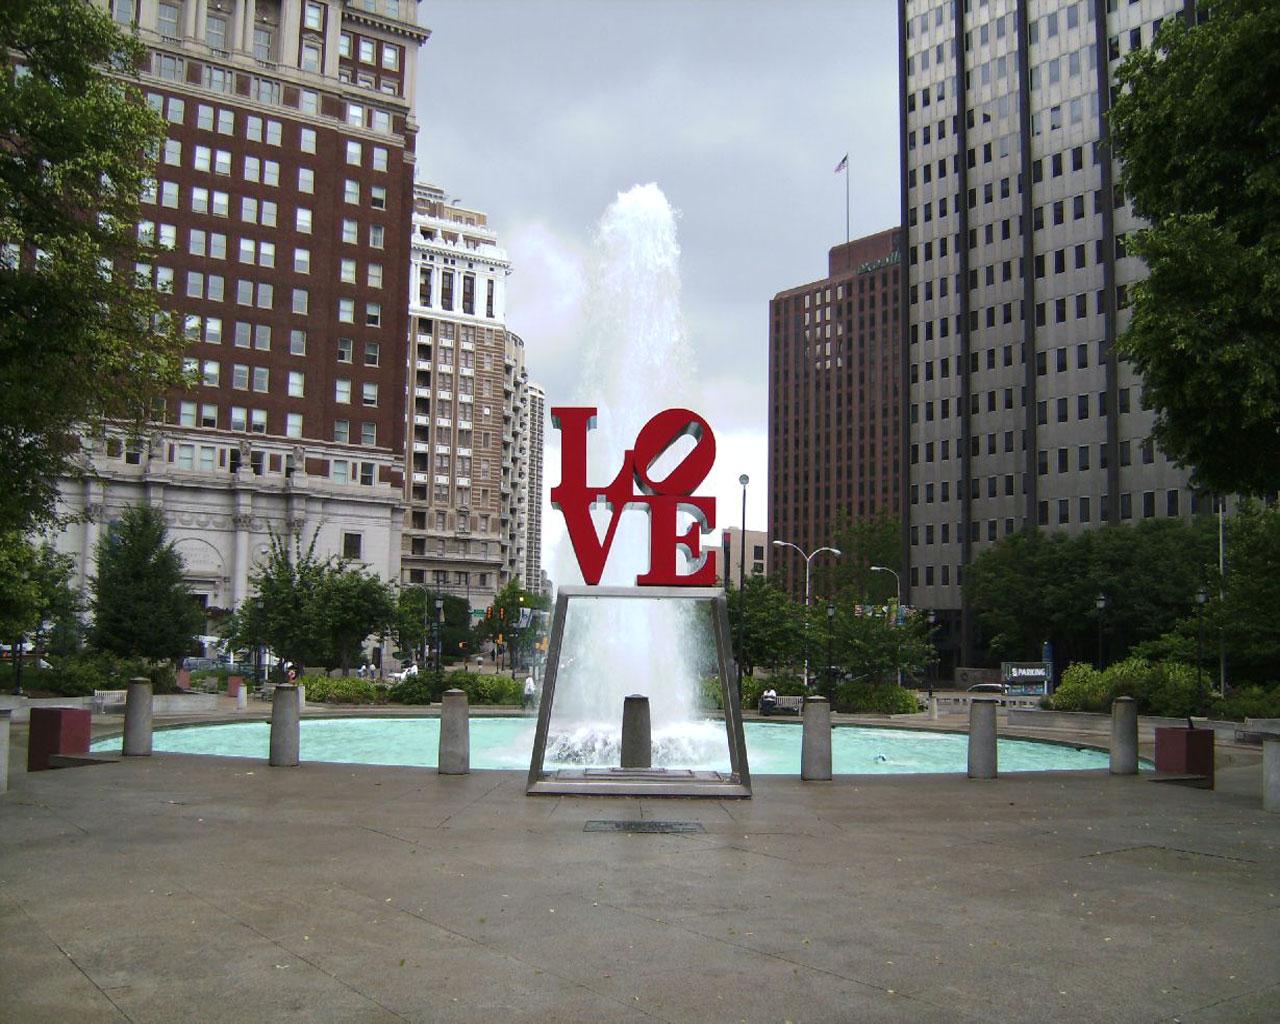 Philadelphia - Love Park Wallpaper #1 1280 x 1024 